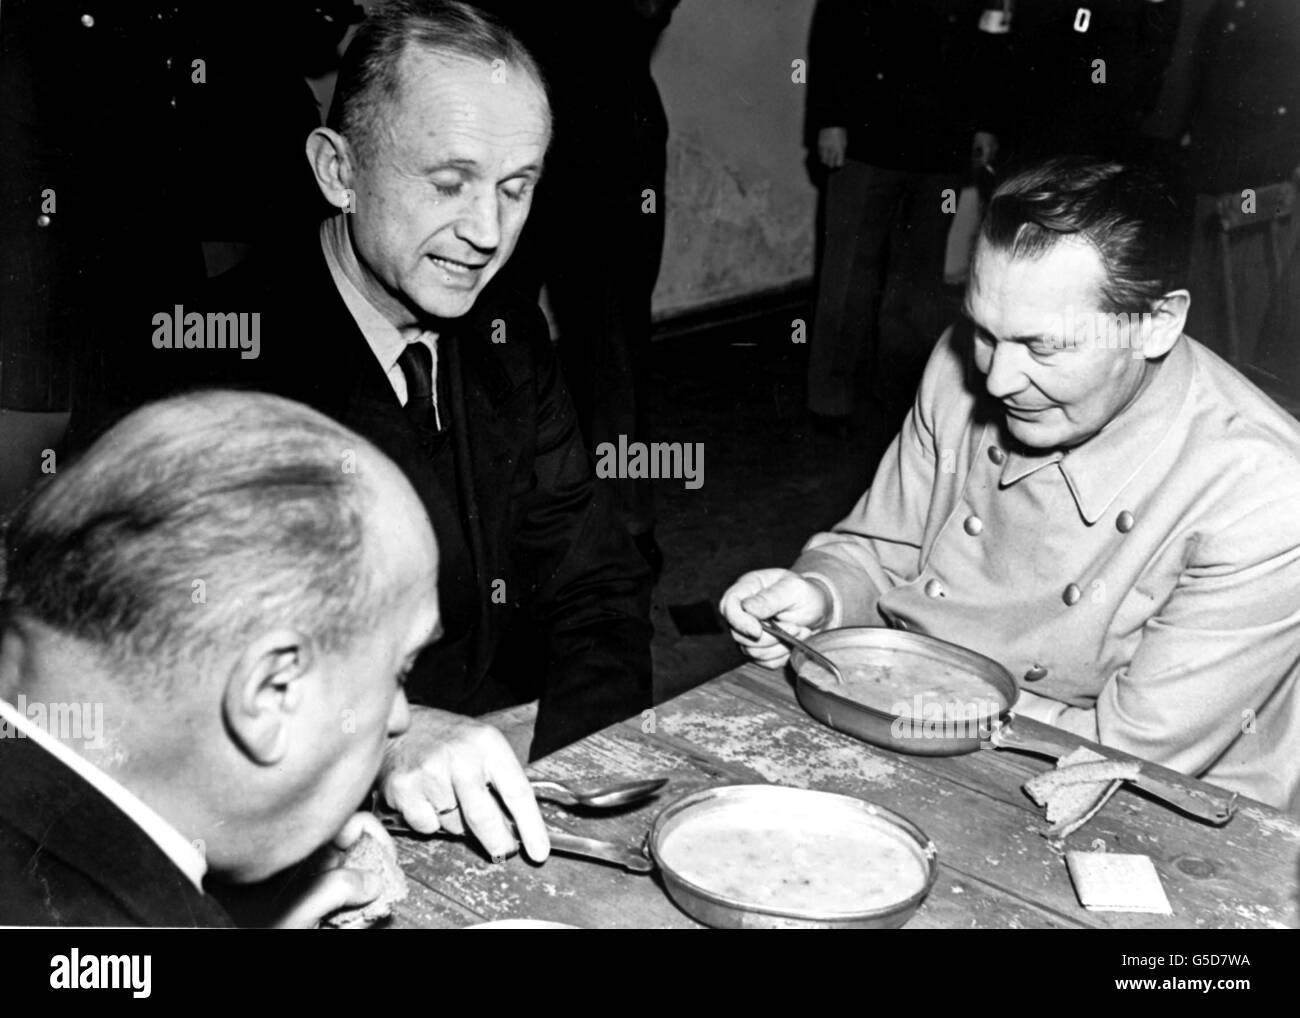 Admiral Karl Doenitz (c), Führer des Deutschen Reiches nach Hitlers Selbstmord, isst mit dem ehemaligen Reichsmarschall Hermann Göring (r), der während der Nürnberger Nachkriegsprozesse unter Bewachung war. Die Prozesse im Justizpalast begannen am 20. November 1945. Bild Teil der PA Zweiten Weltkrieg Sammlung. Stockfoto